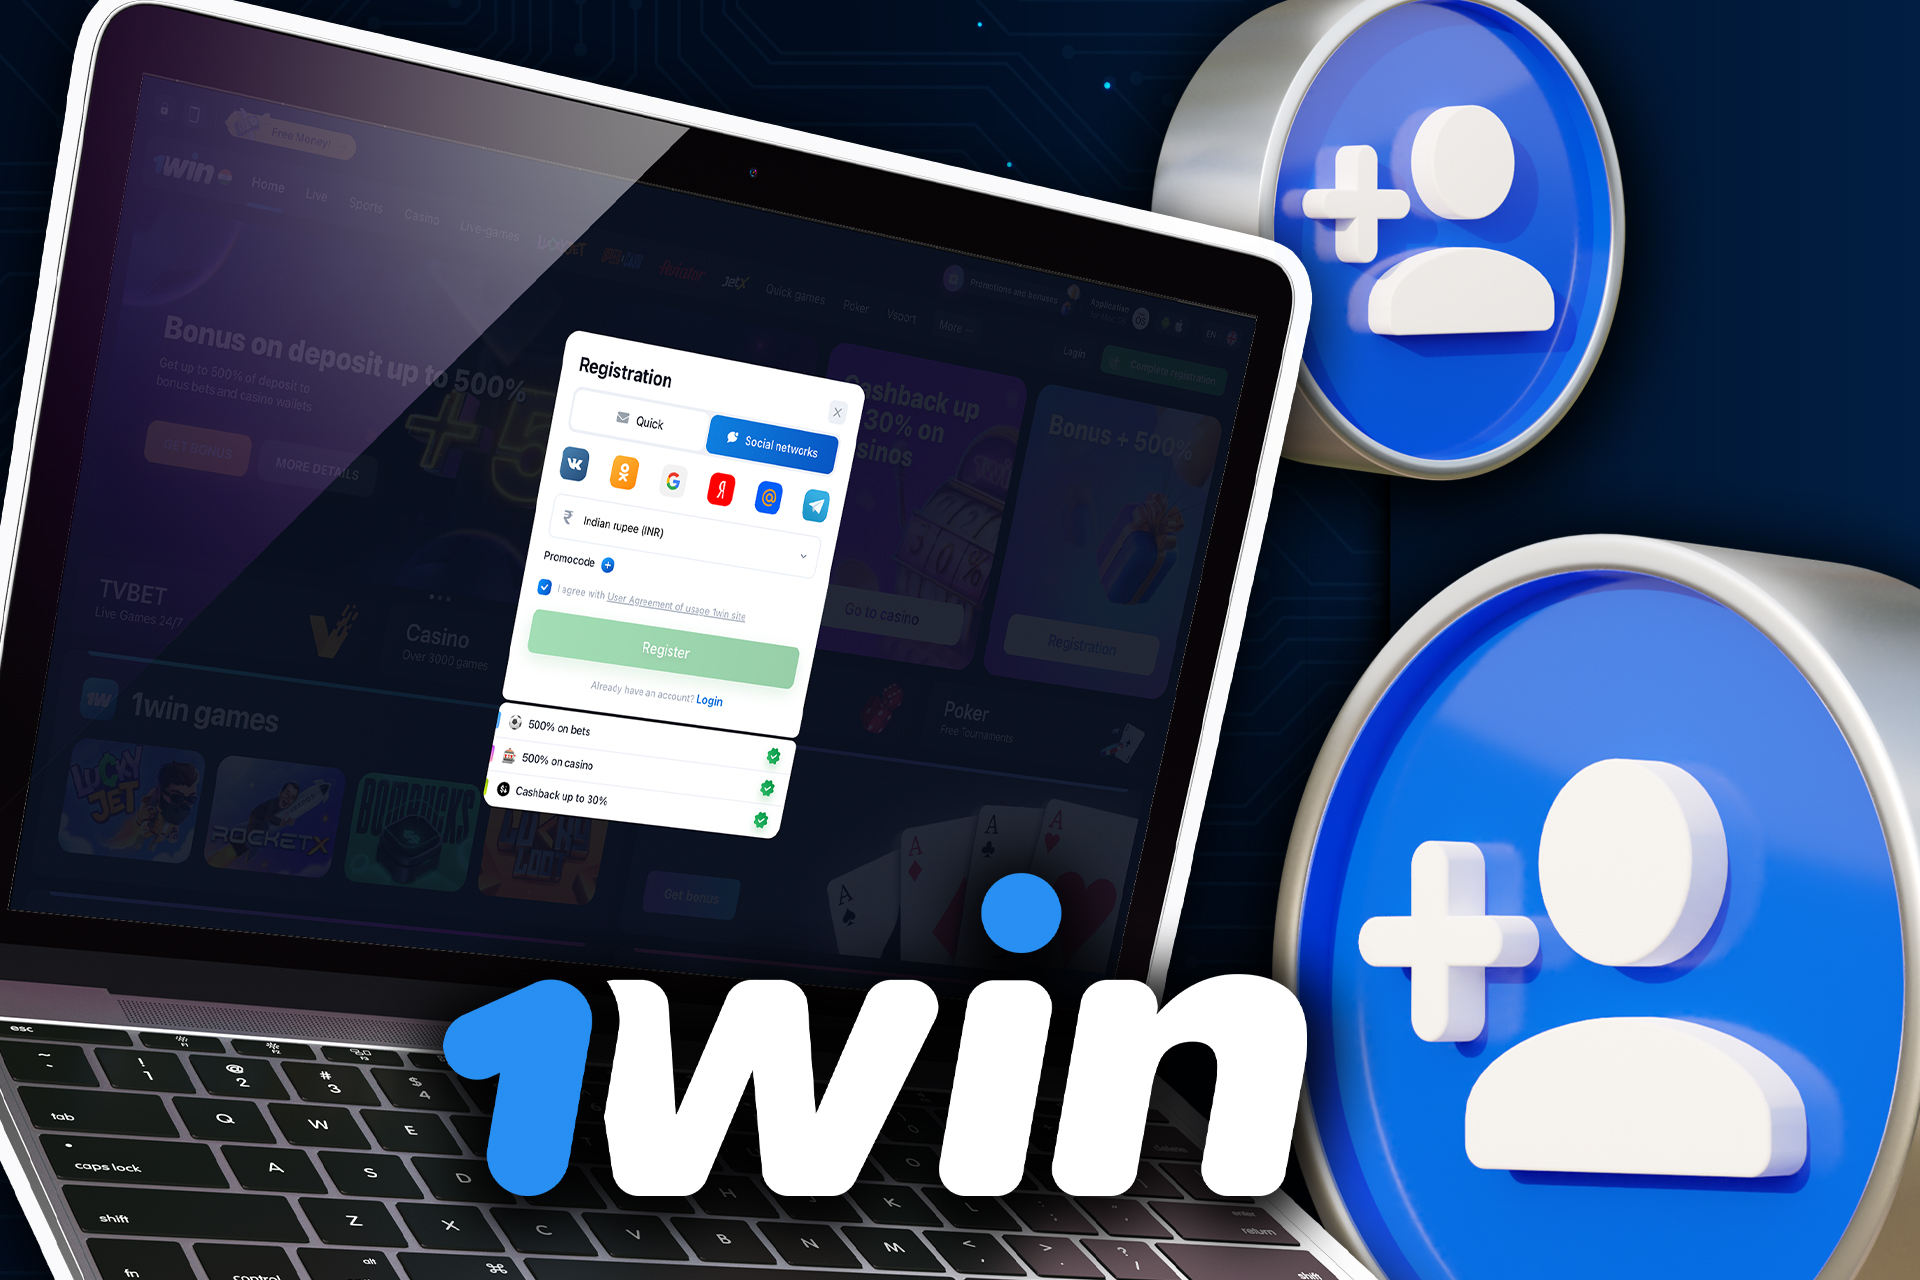 También puedes registrar una cuenta en 1win con las redes sociales.